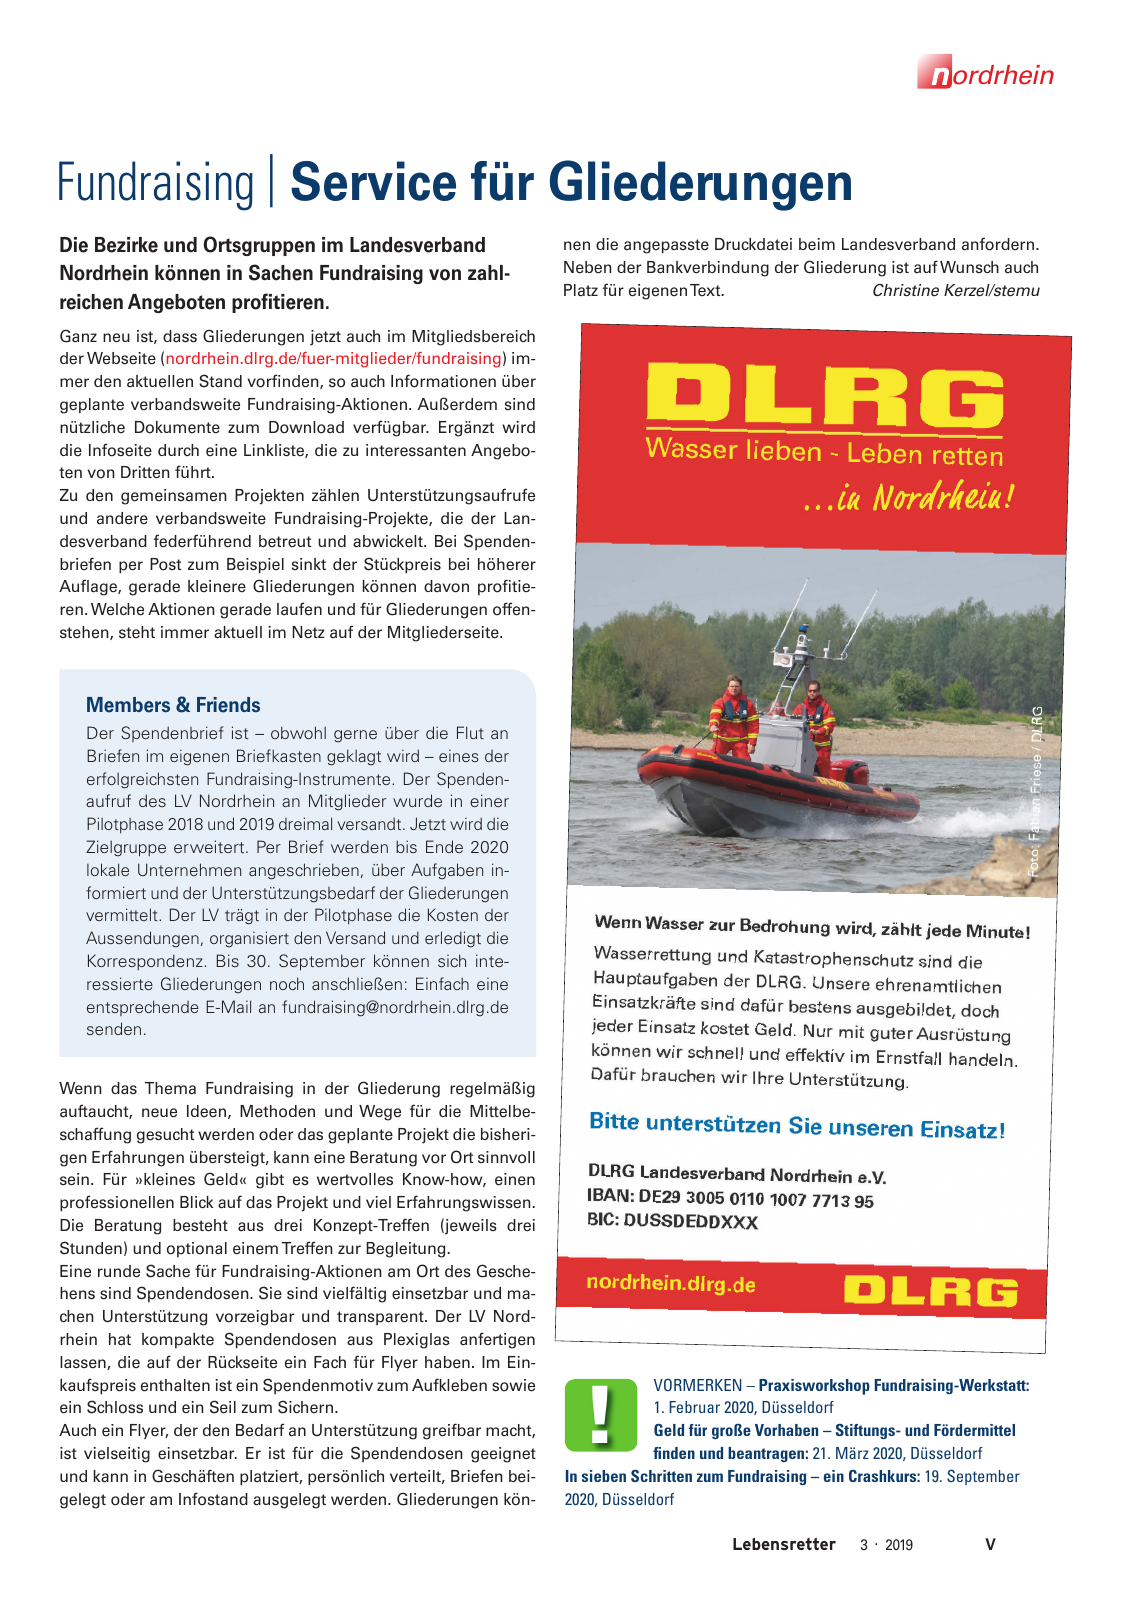 Vorschau Lebensretter 3/2019 - Nordrhein Regionalausgabe Seite 7